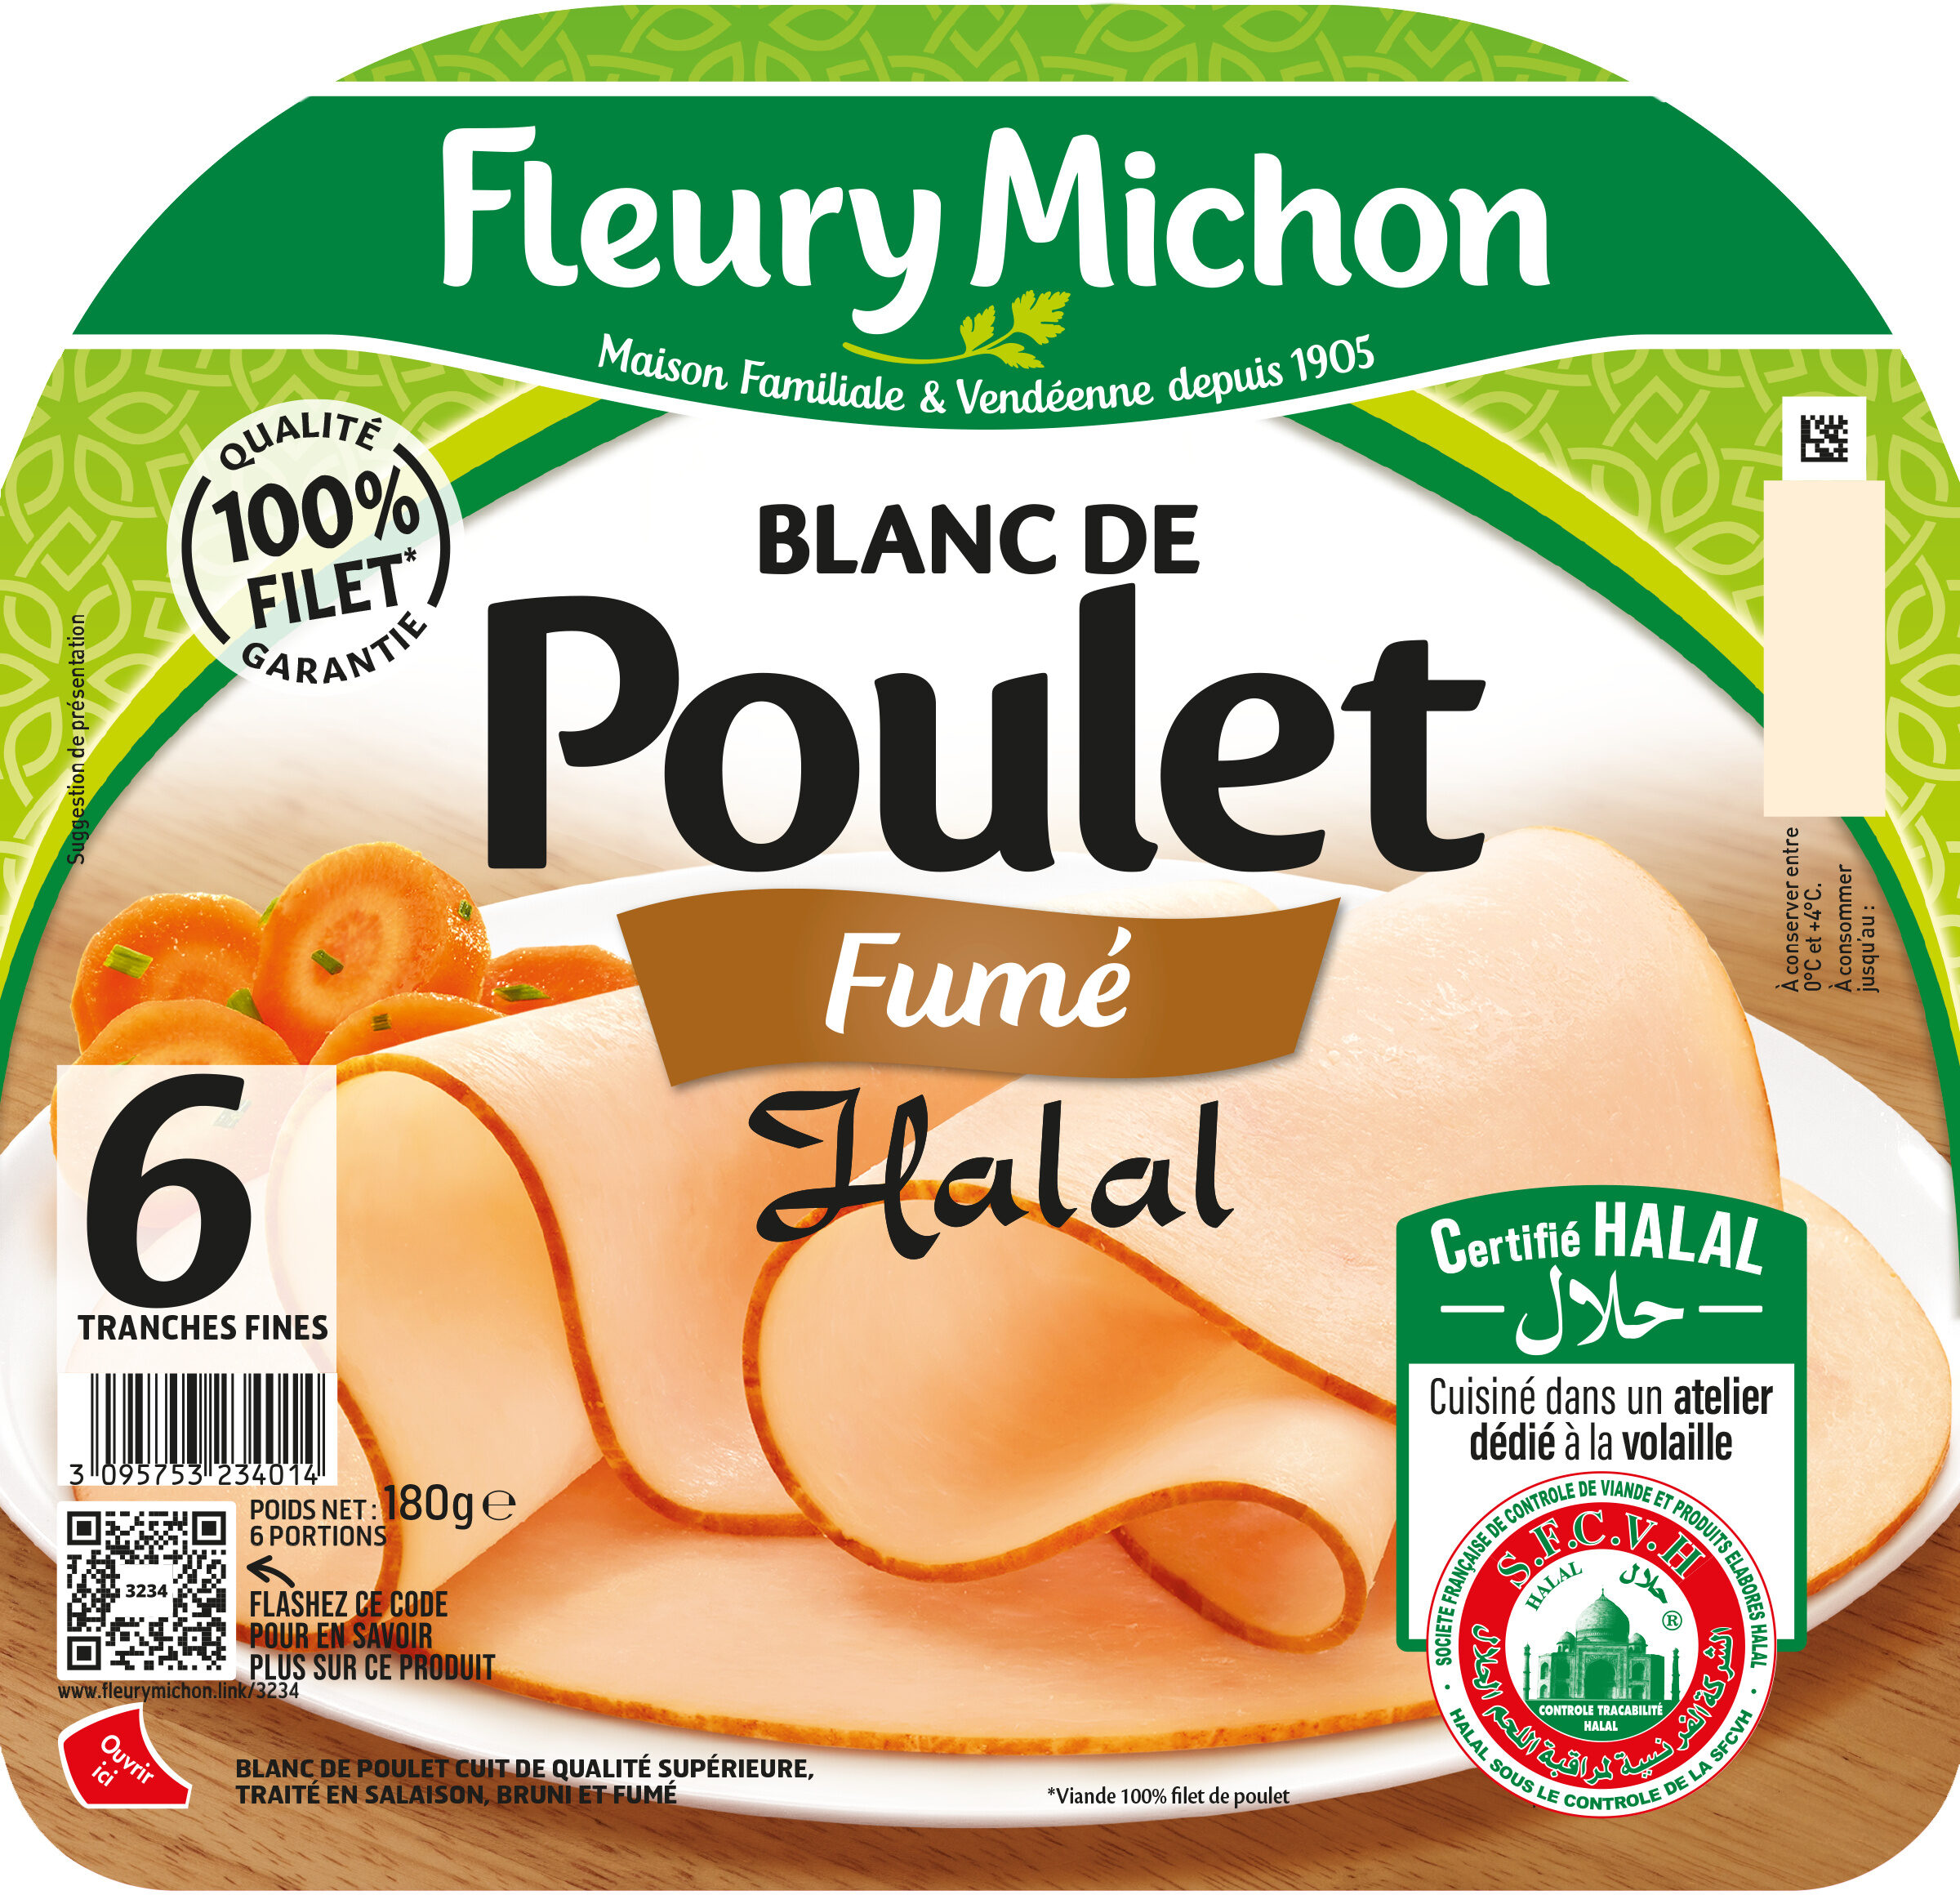 Blanc de Poulet - Fumé - Halal - نتاج - fr